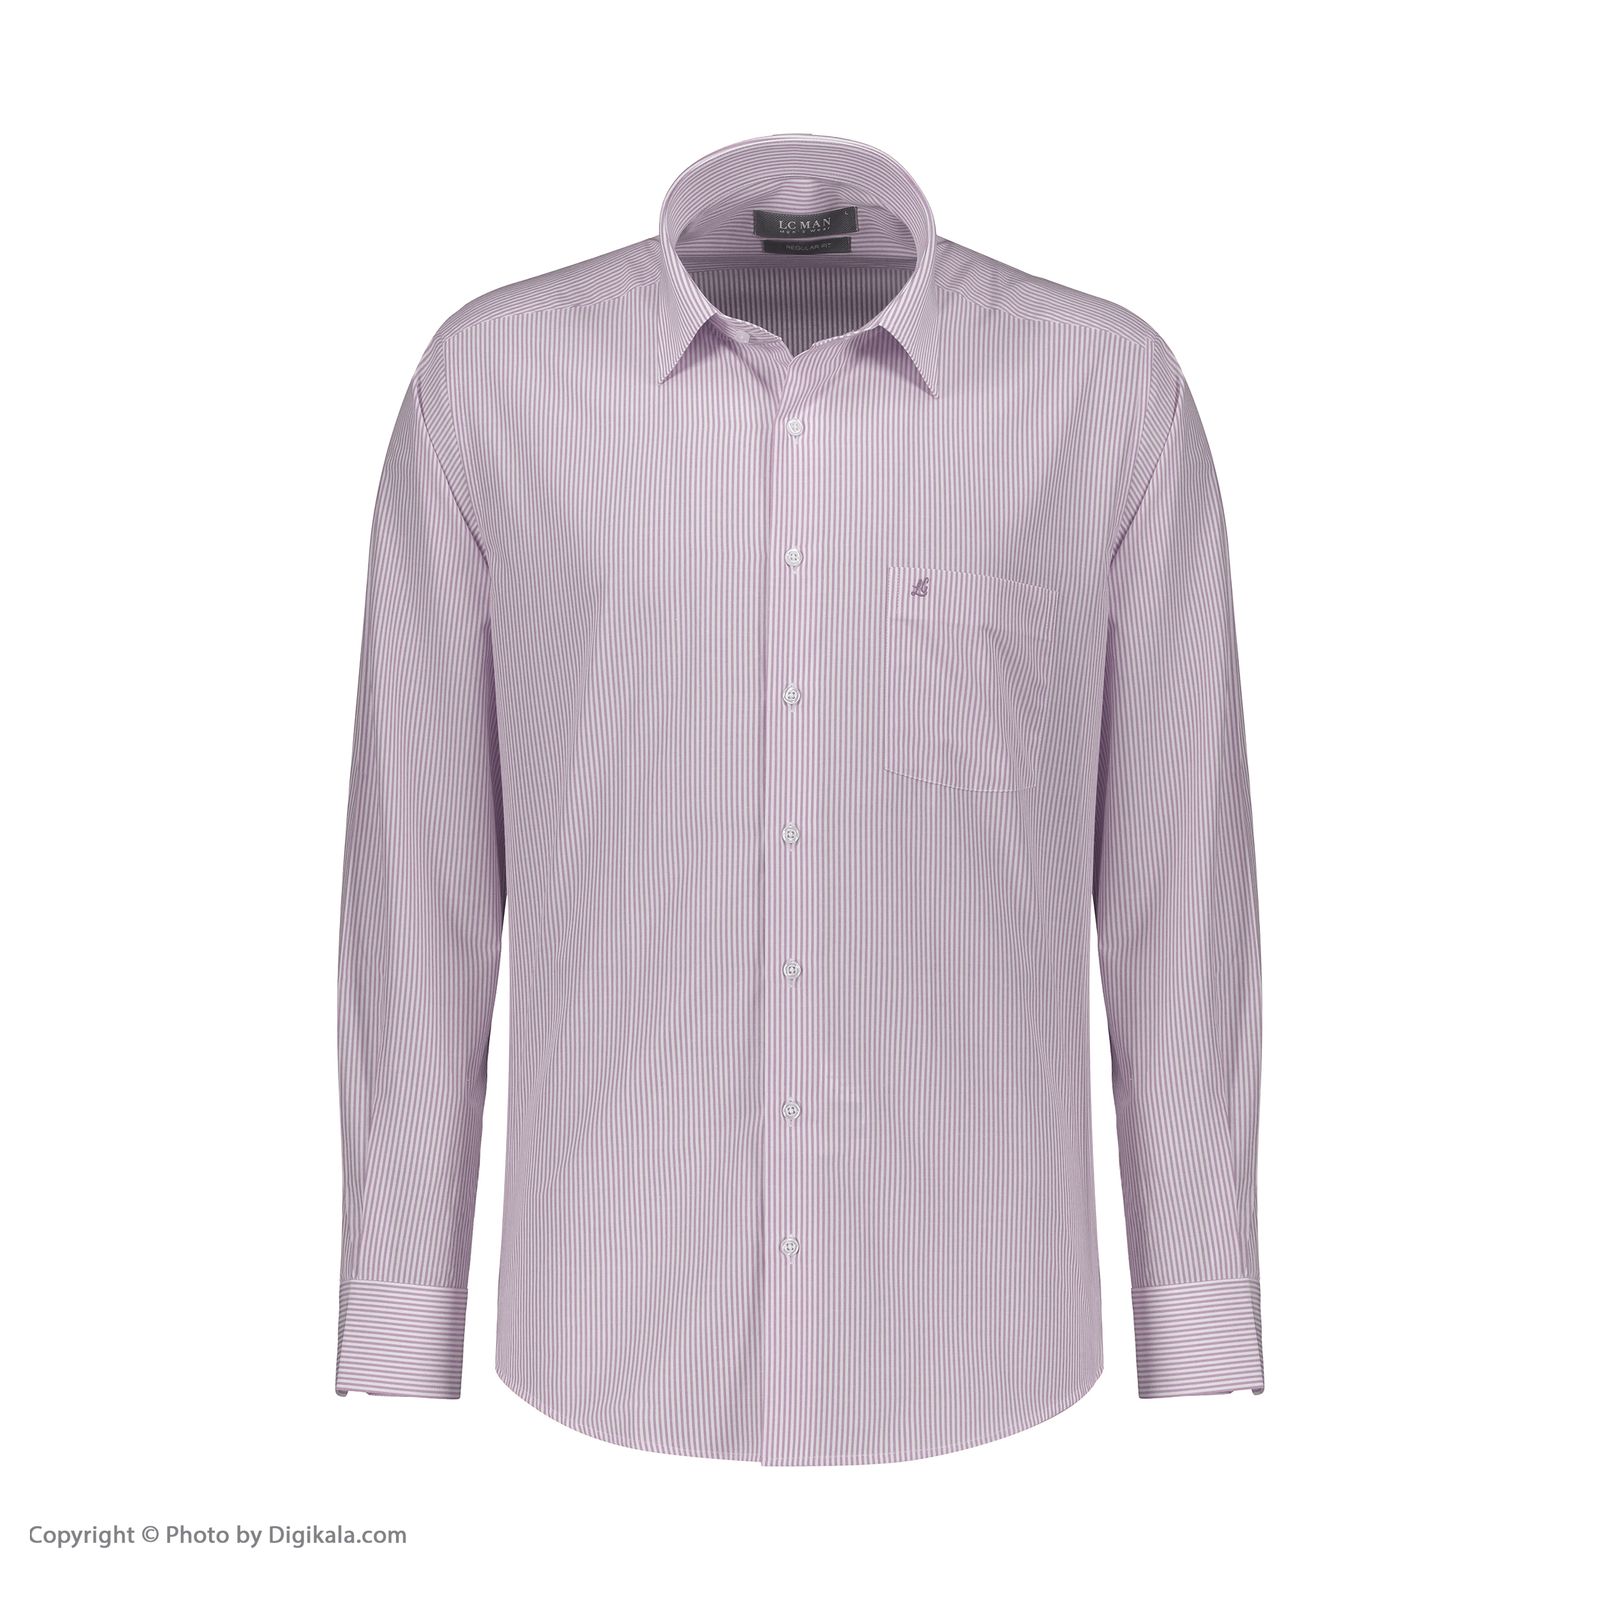 پیراهن آستین بلند مردانه ال سی من مدل 02181290-purple 082 -  - 2